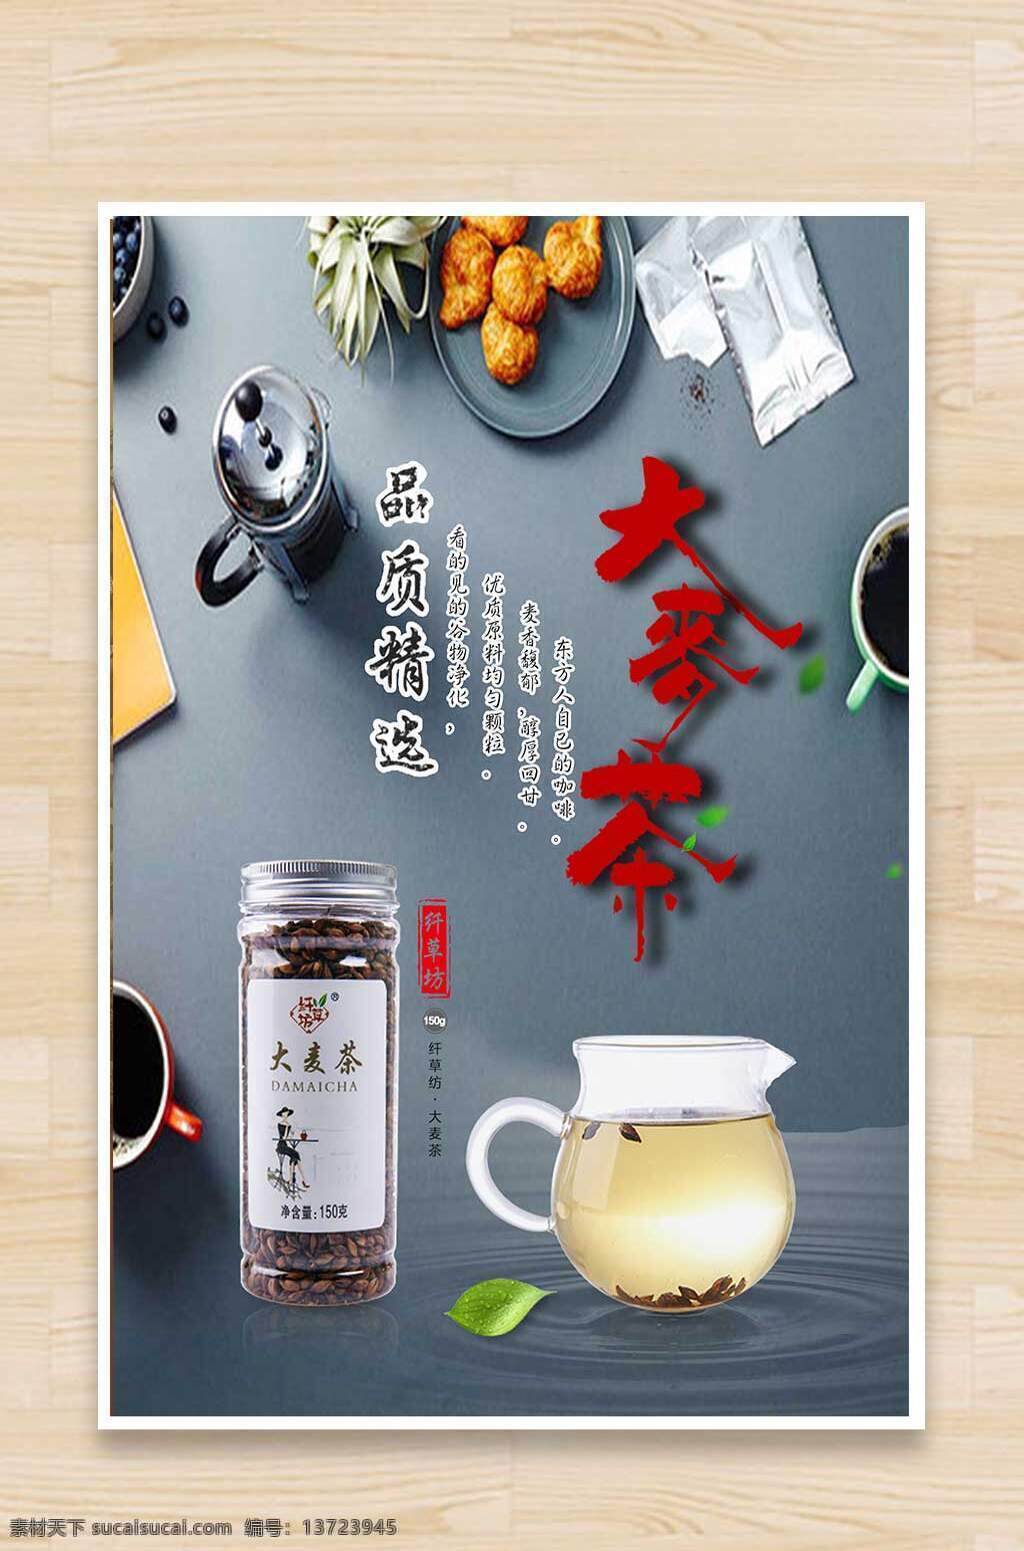 大麦 茶 大麦茶 海报背景 茶杯 树叶素材 背景 中国茶海报 咖啡海报 茶文化 广告海报设计 宣传页